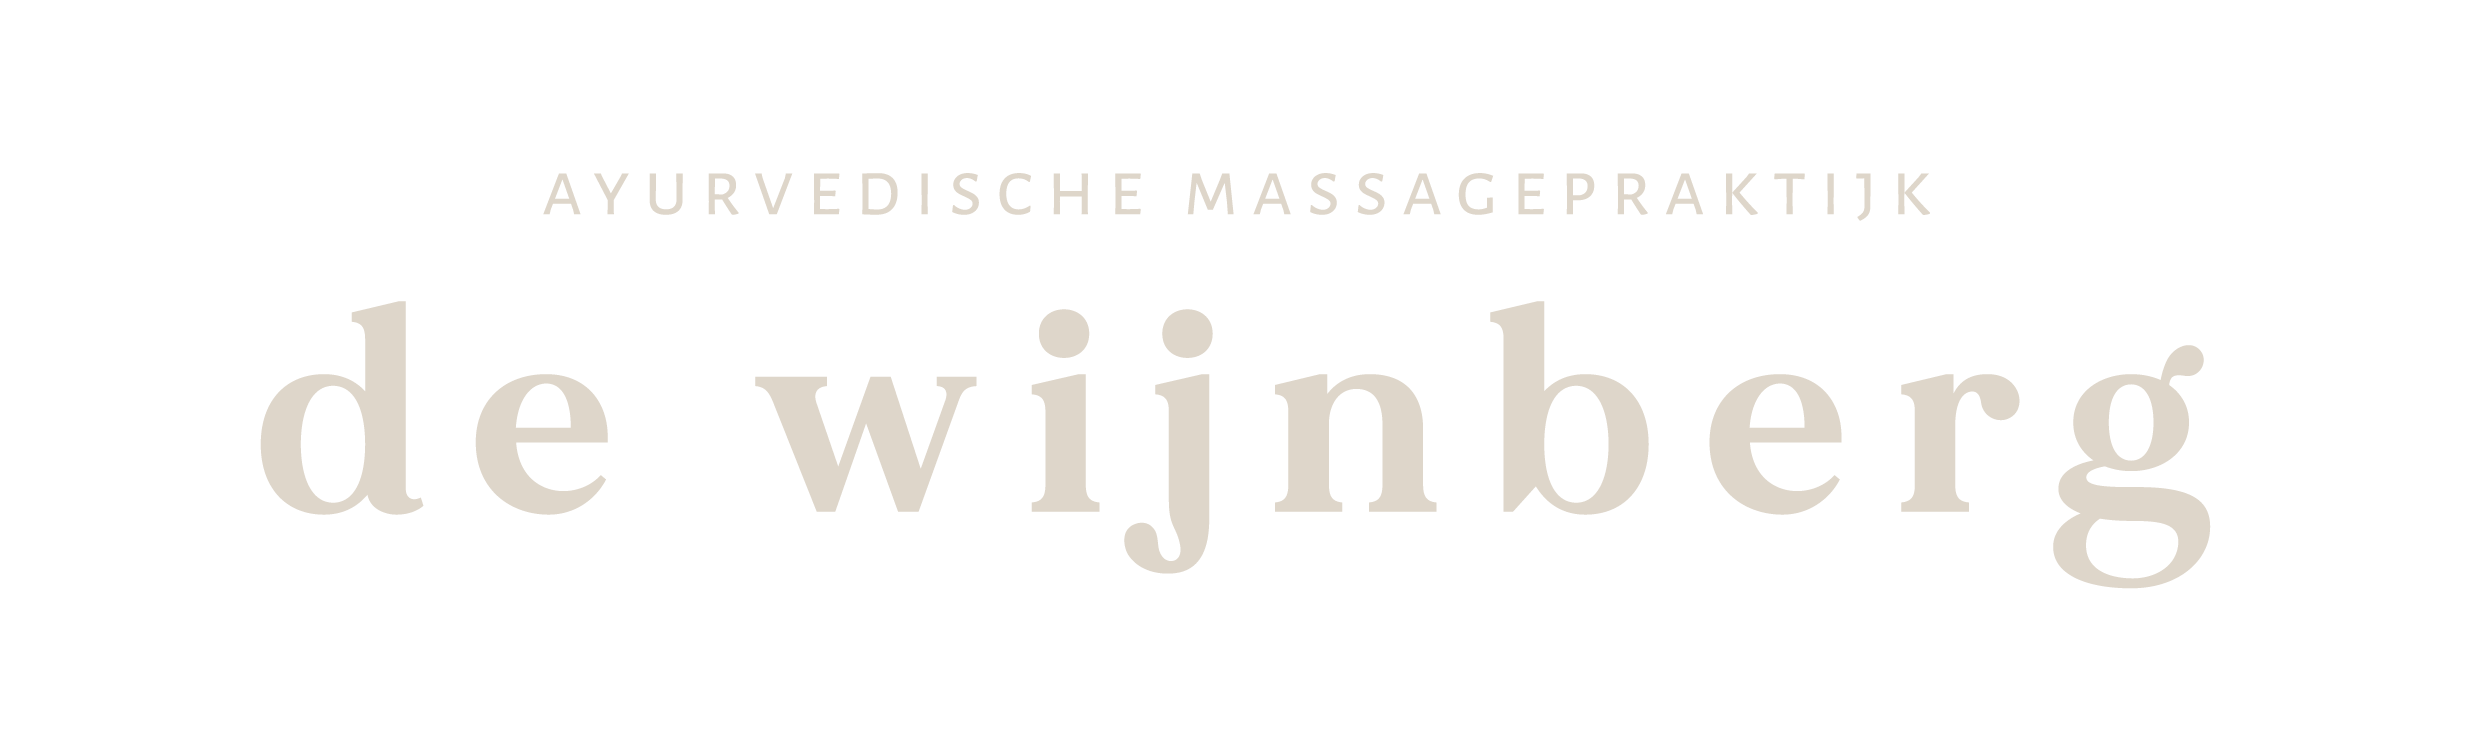 Ayurvedische Massagepraktijk de Wijnberg